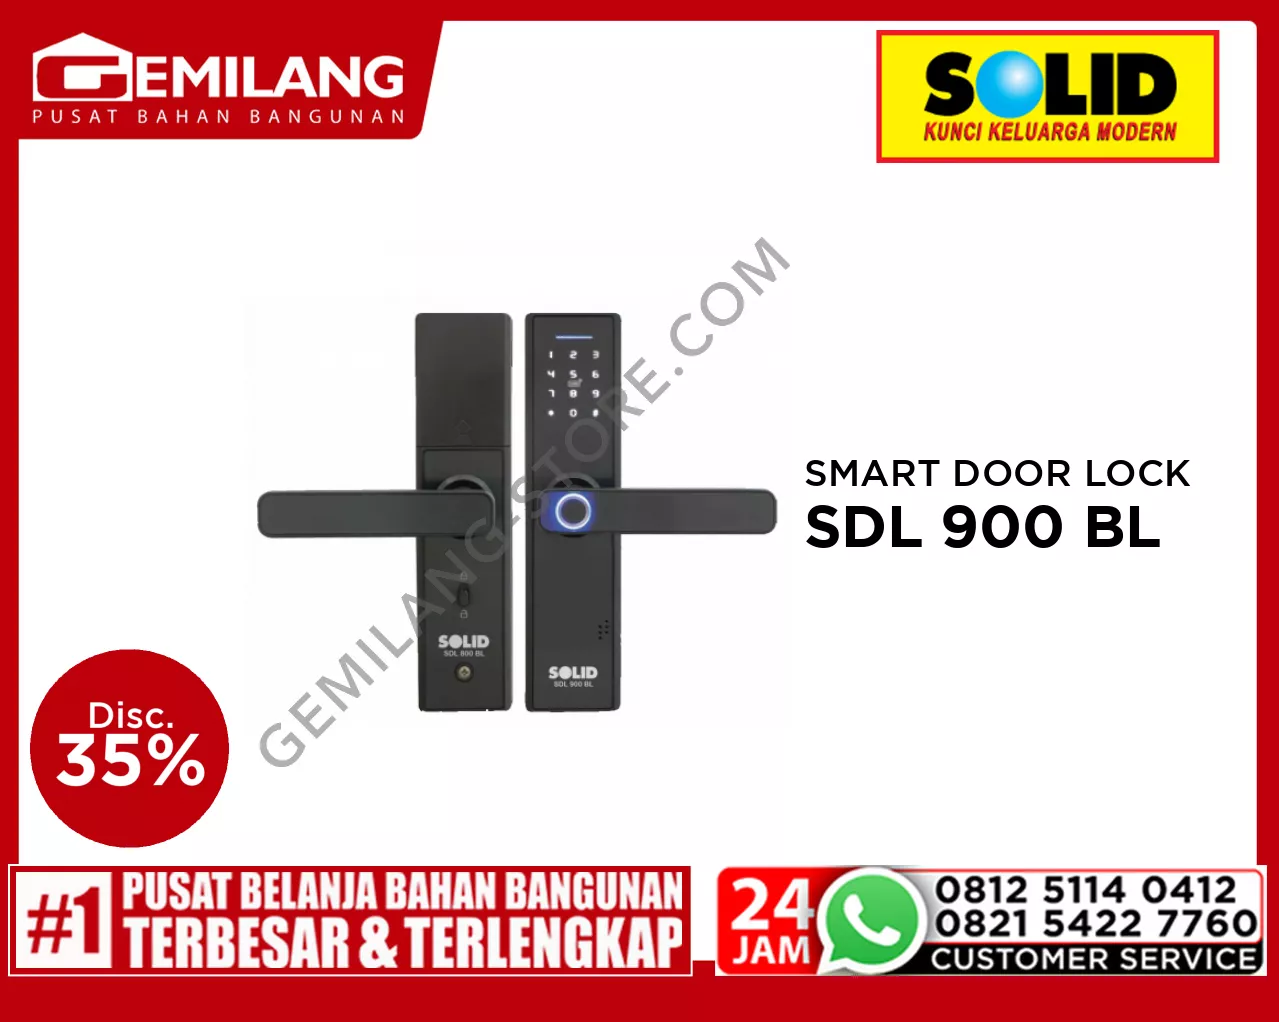 SOLID SMART DOOR LOCK SDL 900 BL